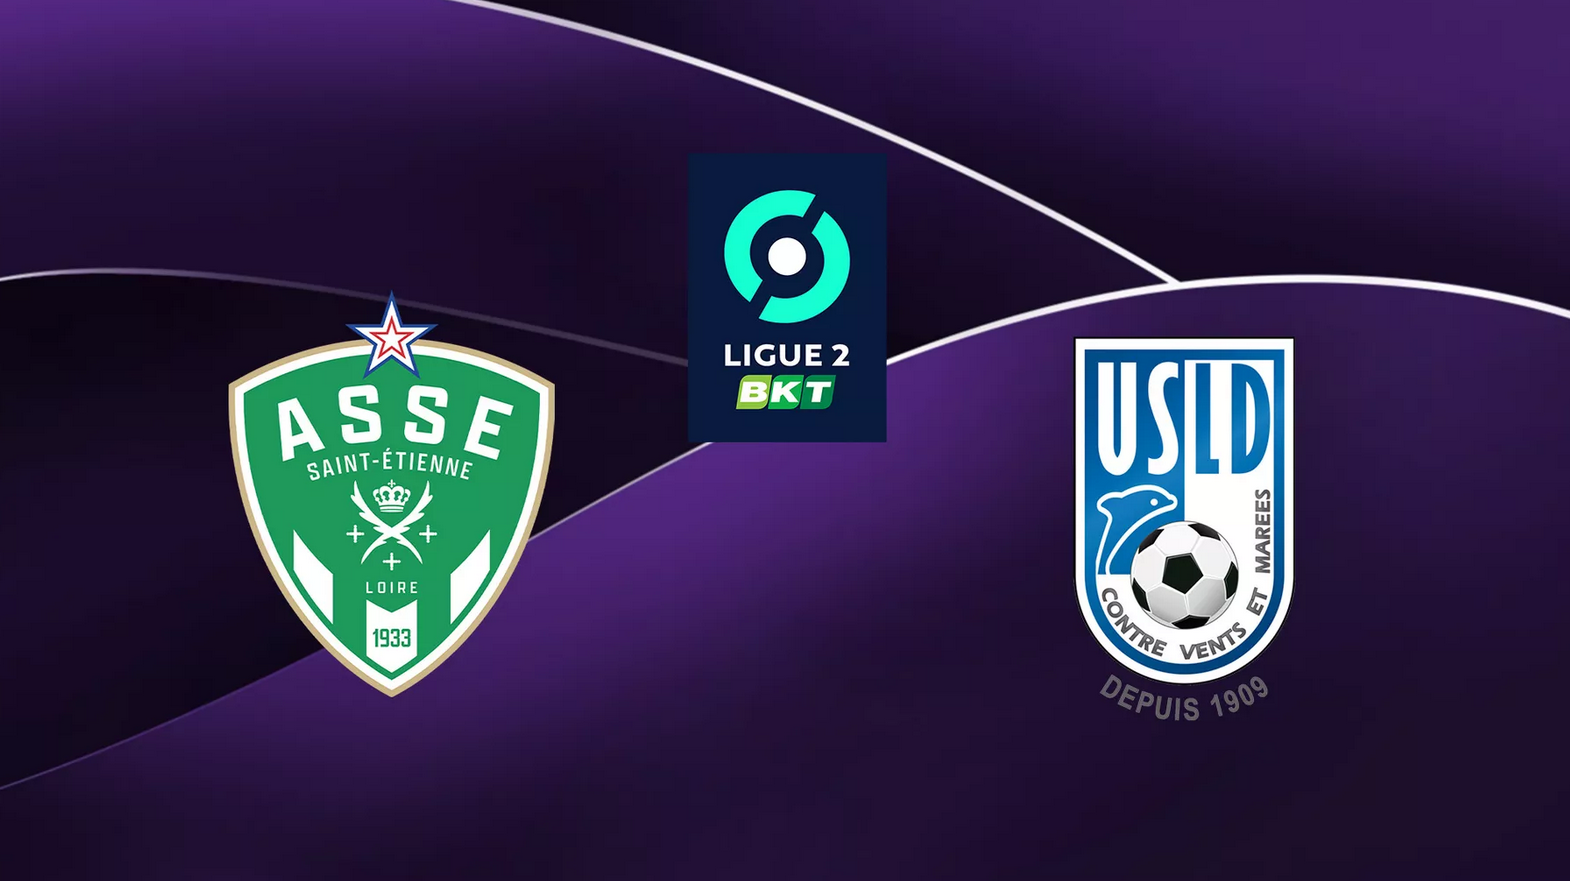 Saint-Etienne (ASSE) / Dunkerque (USLD) (TV/Streaming) Sur quelle chaîne et à quelle heure suivre le match de Ligue 2 ?